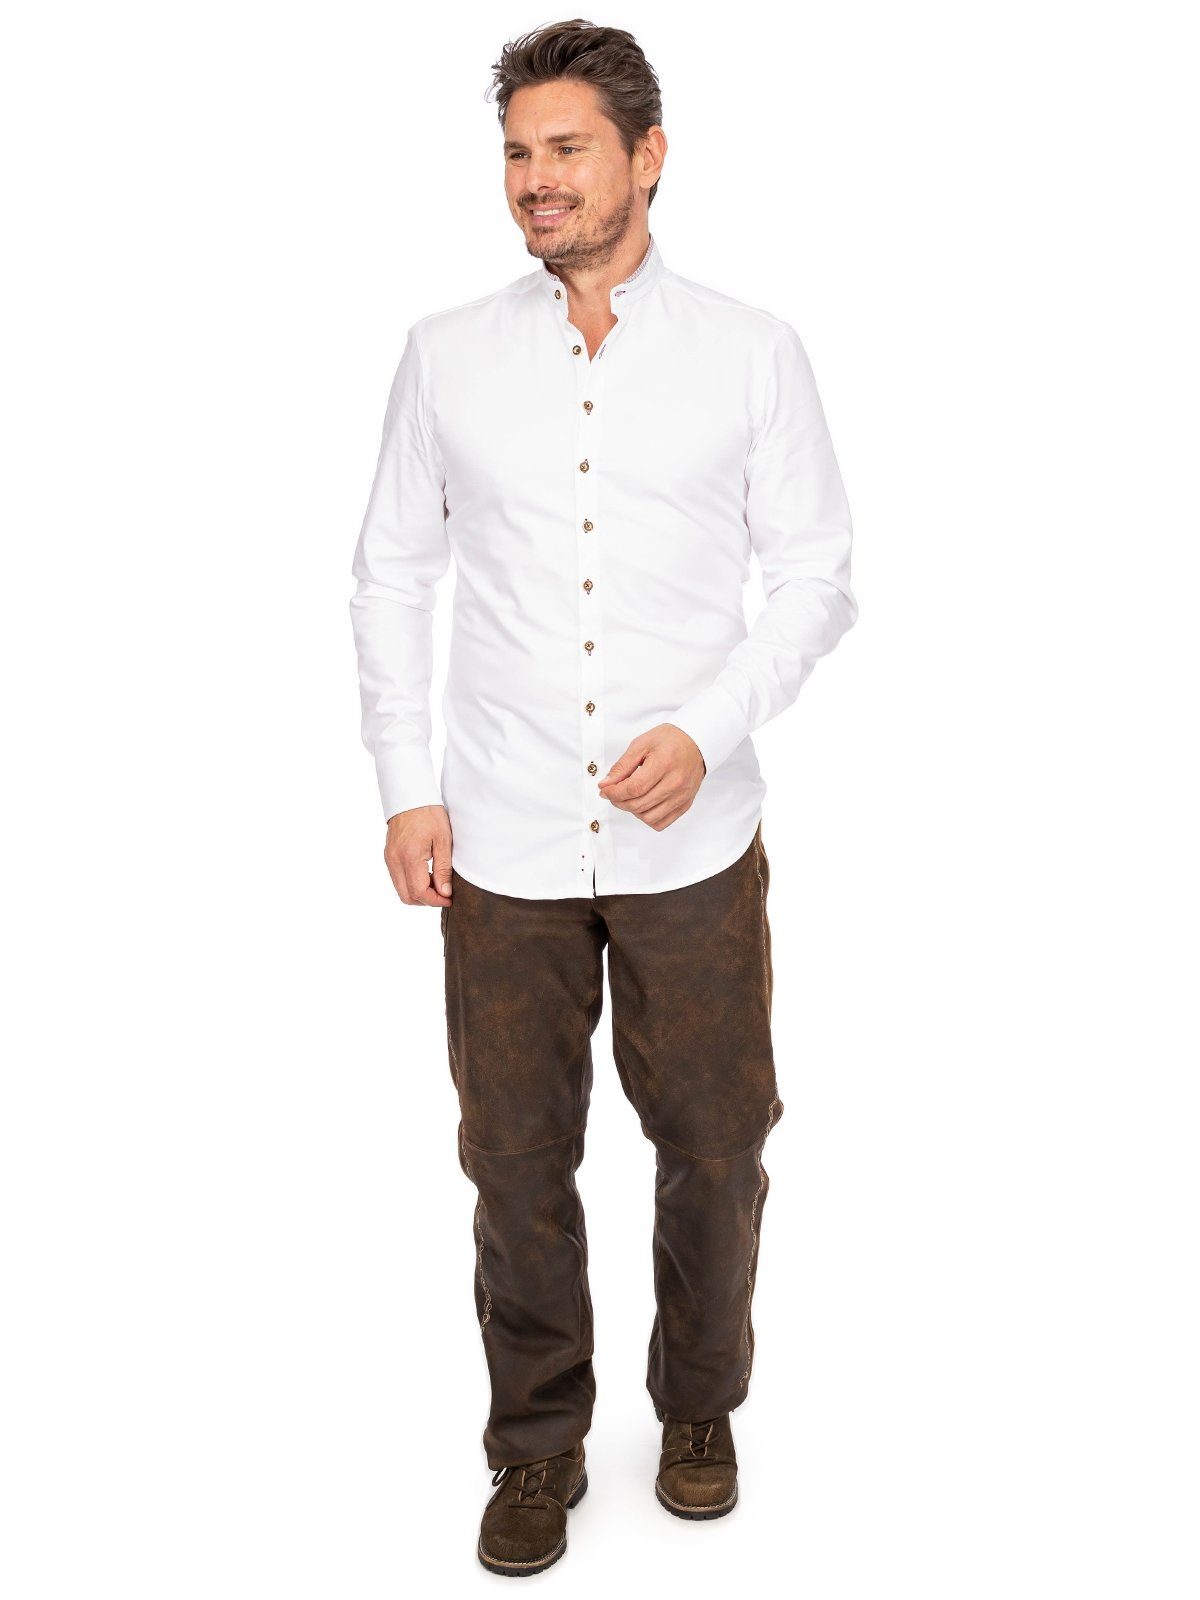 Gipfelstürmer Trachtenhemd Hemd Stehkragen 420004-3829-138 weiß hochrot (Slim